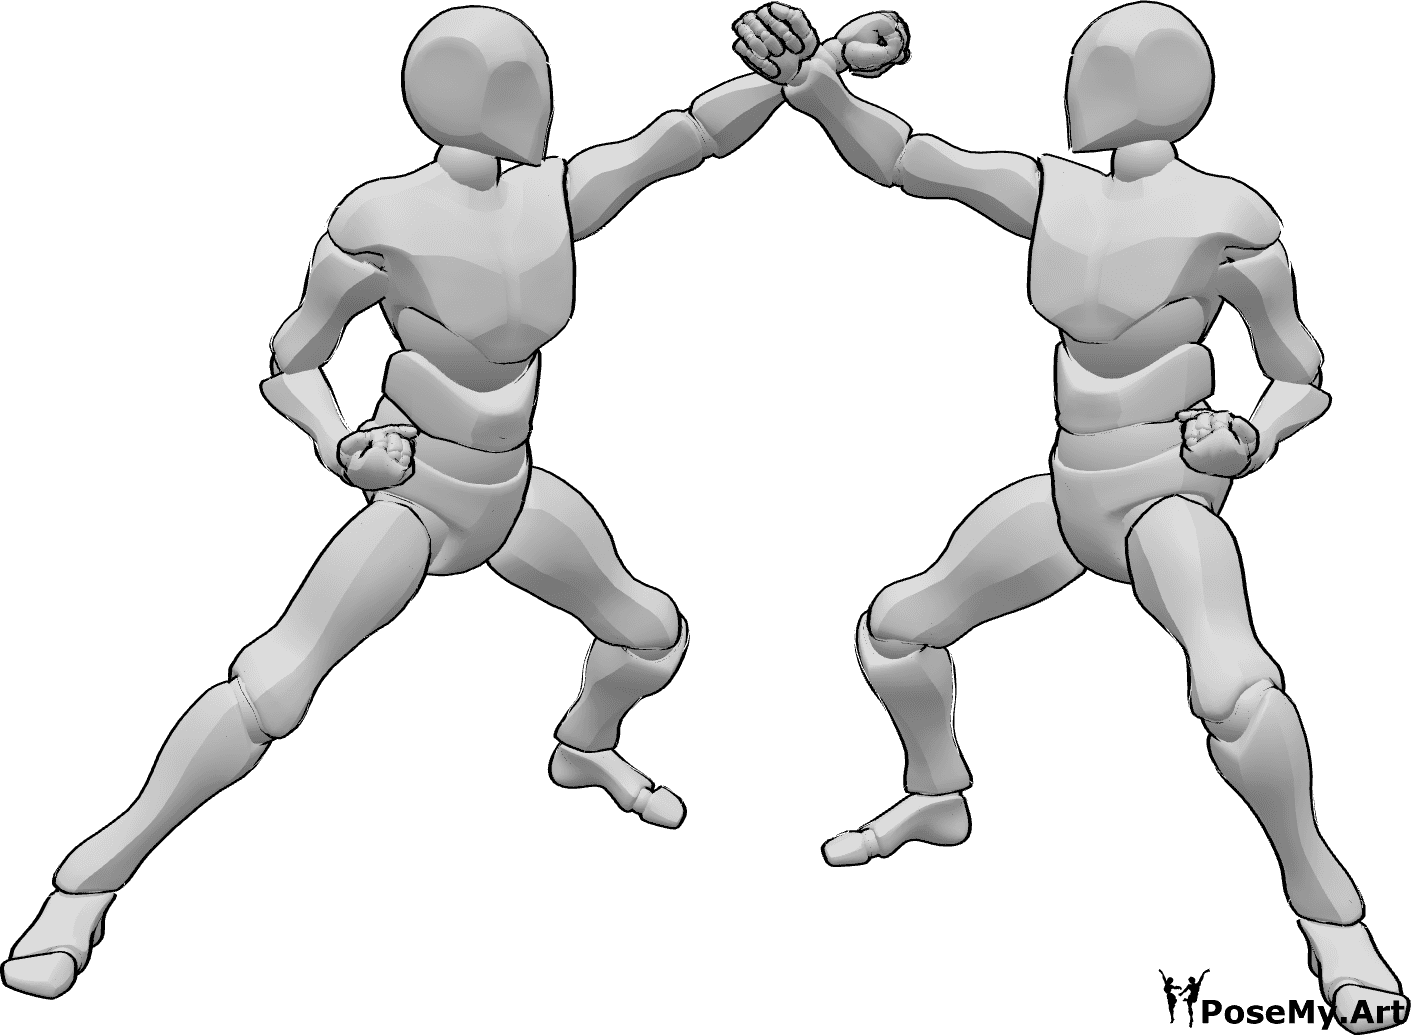 Riferimento alle pose- Due maschi in posa di karate - Due maschi combattono in una posa da karate